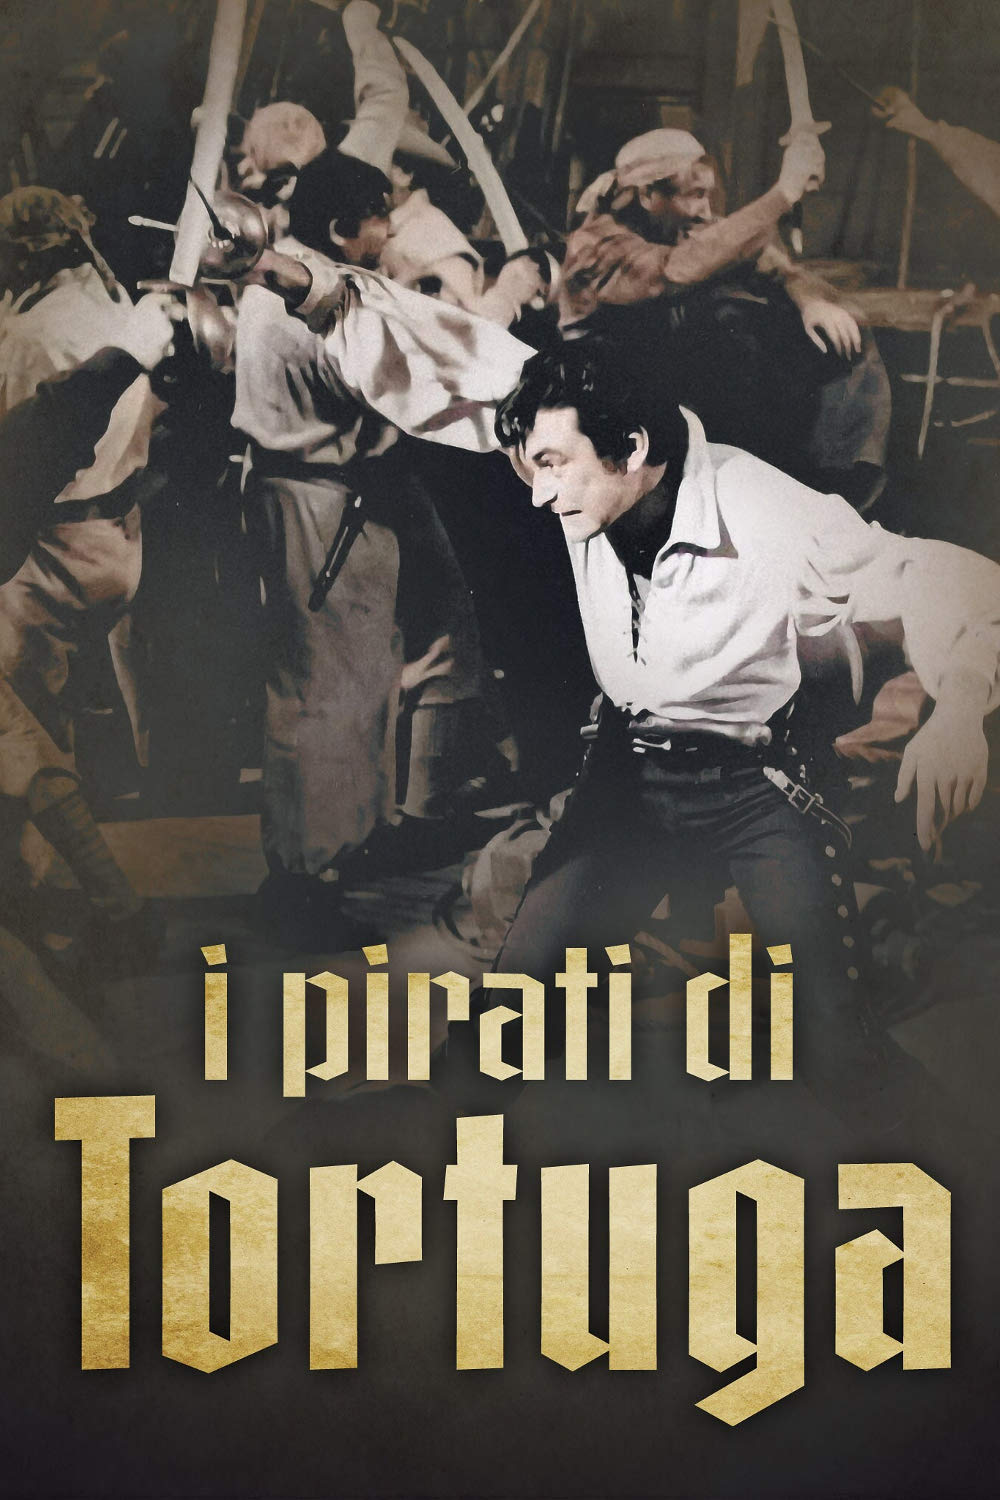 I pirati della Tortuga (1961)